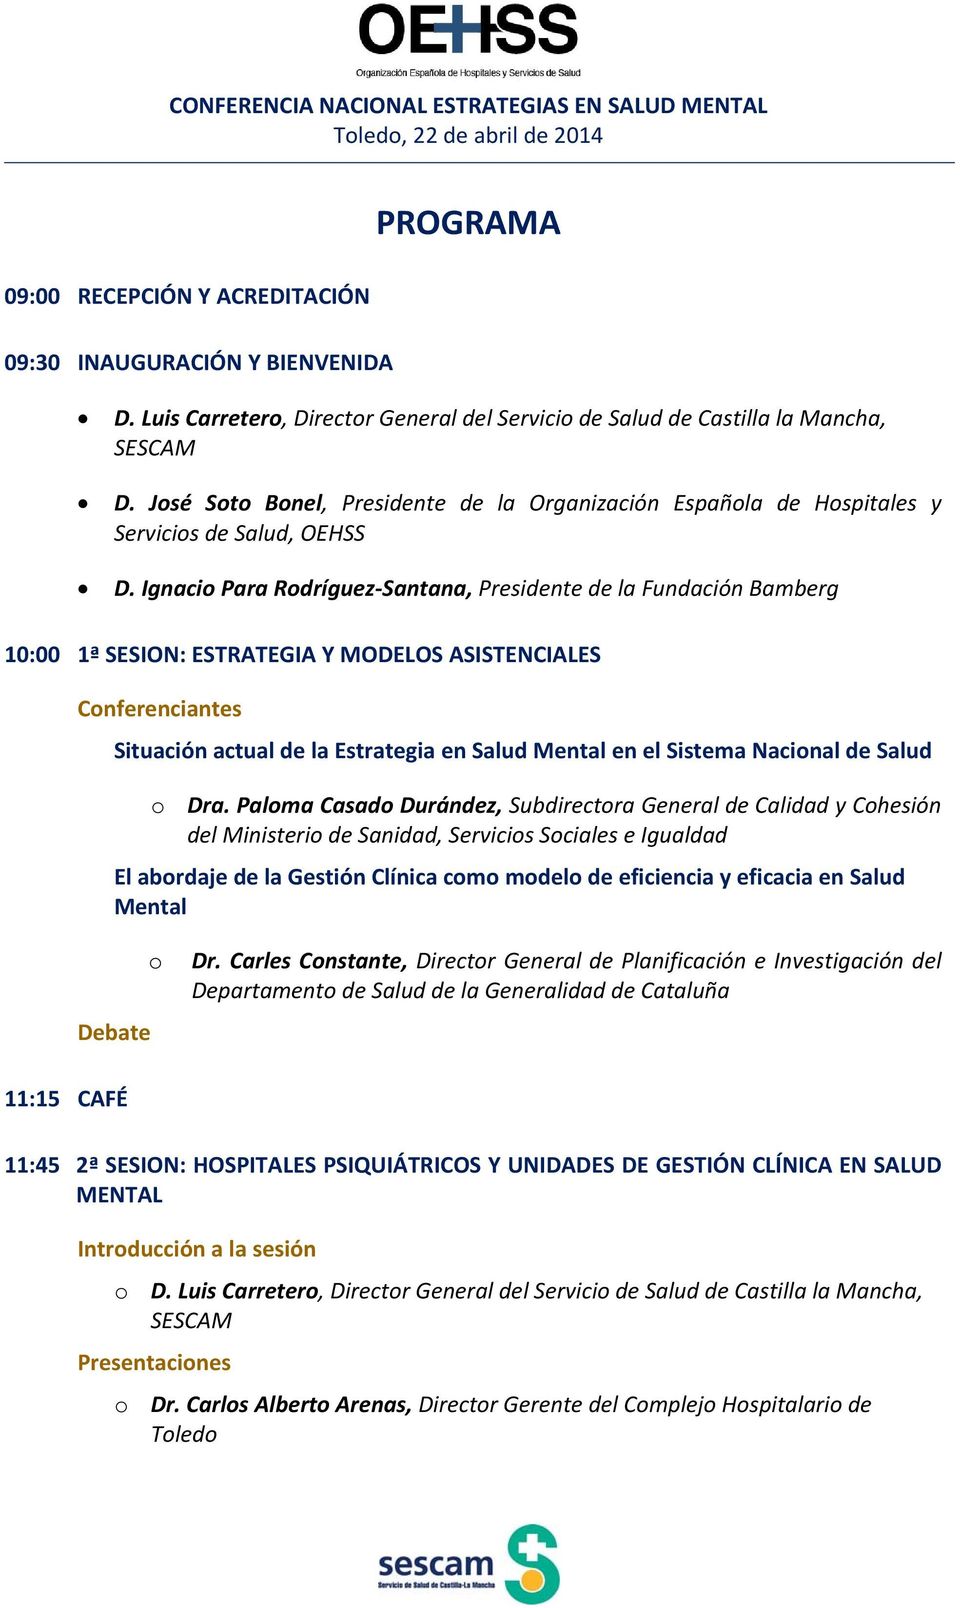 Ignacio Para Rodríguez Santana, Presidente de la Fundación Bamberg 10:00 1ª SESION: ESTRATEGIA Y MODELOS ASISTENCIALES Conferenciantes Situación actual de la Estrategia en Salud Mental en el Sistema